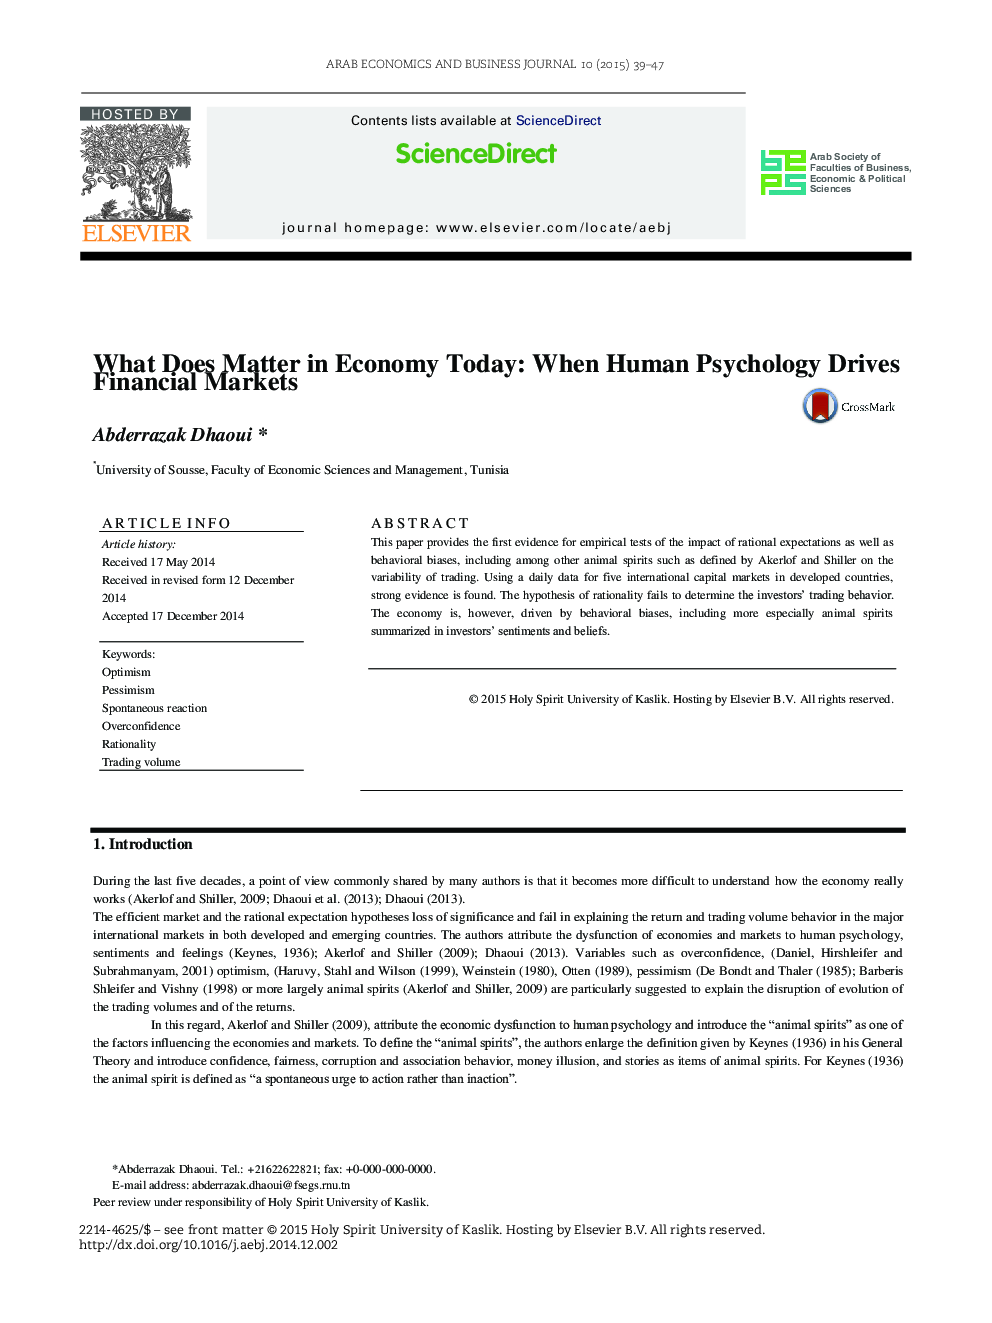 امروز چه چیزی در اقتصاد دارد: زمانی که روانشناسی انسانی بازارهای مالی را به وجود می آورد؟ 